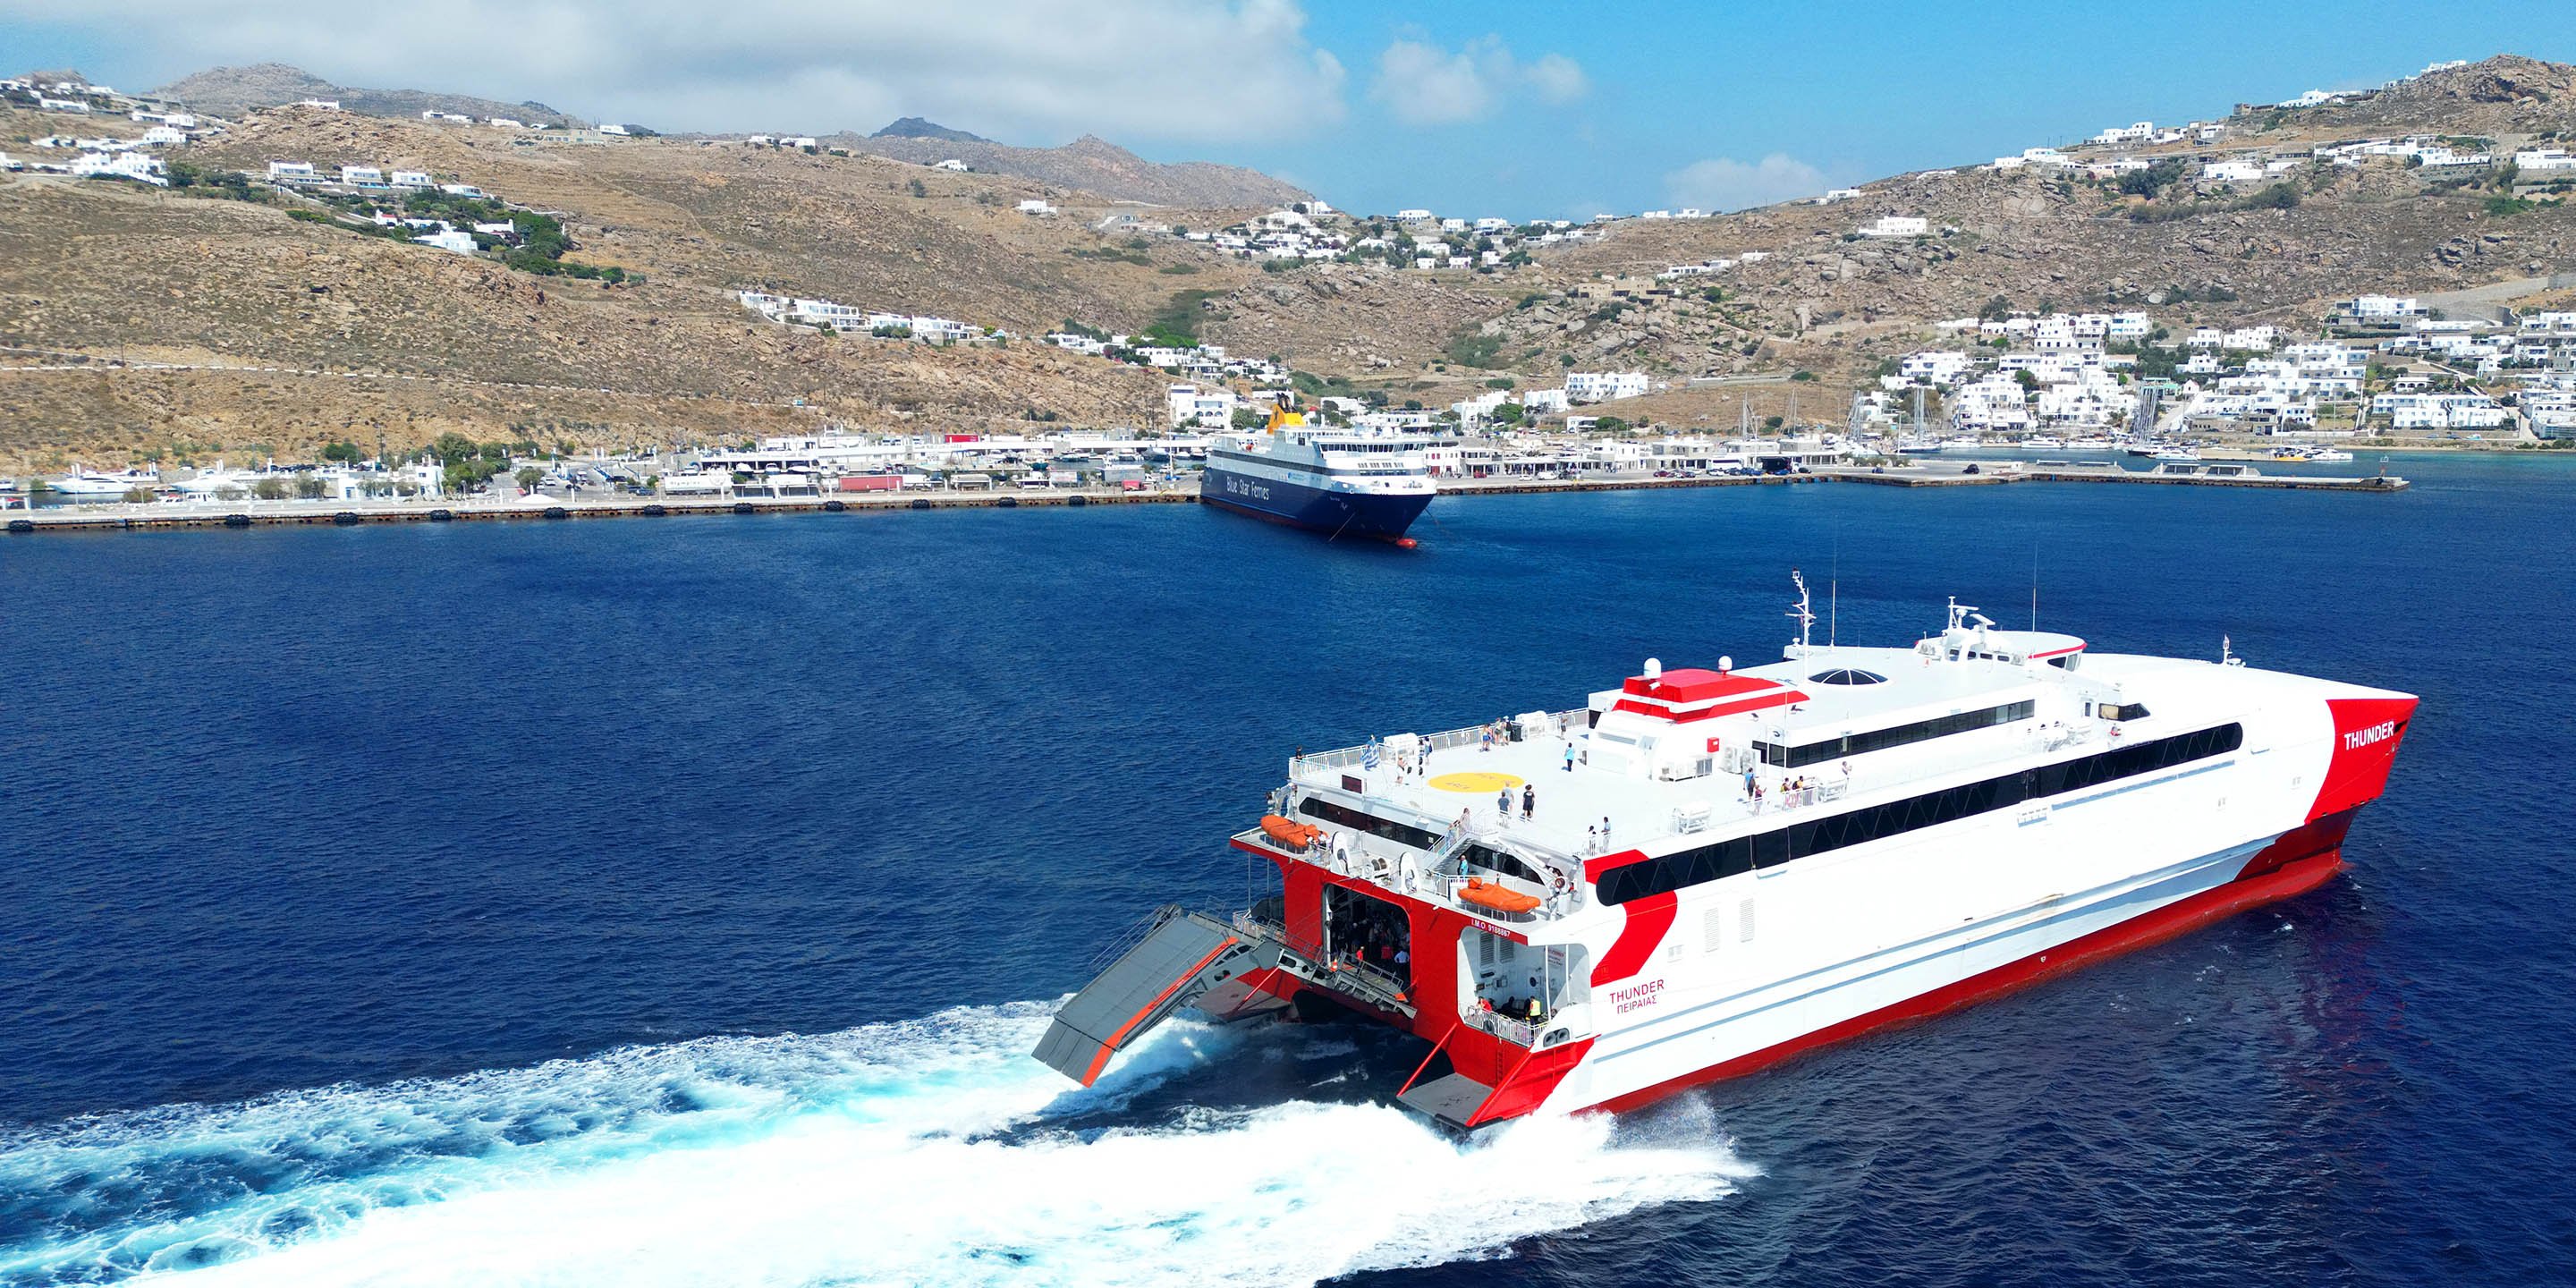 Die Hochgeschwindigkeitsfähre Thunder erreicht den neuen Hafen von Mykonos von Athen aus